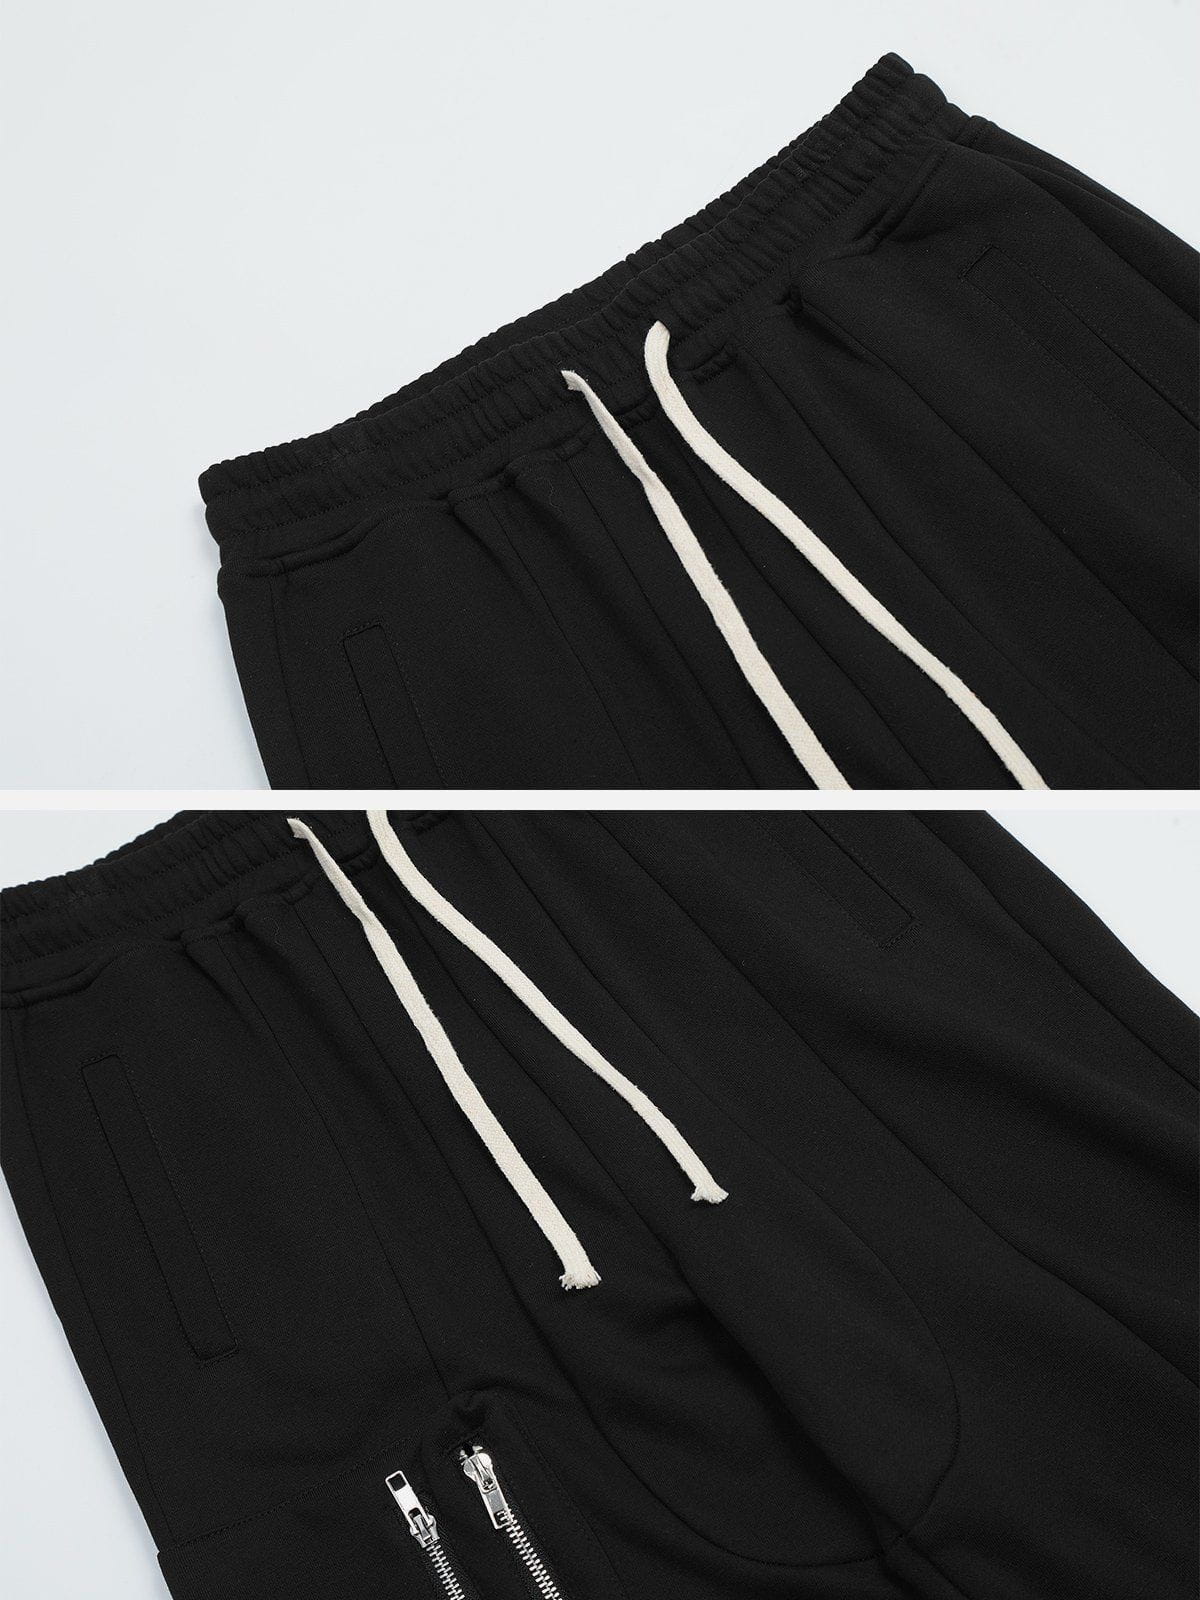 Sneakerland® - Drawstring Multi-Pocket Cargo Pants